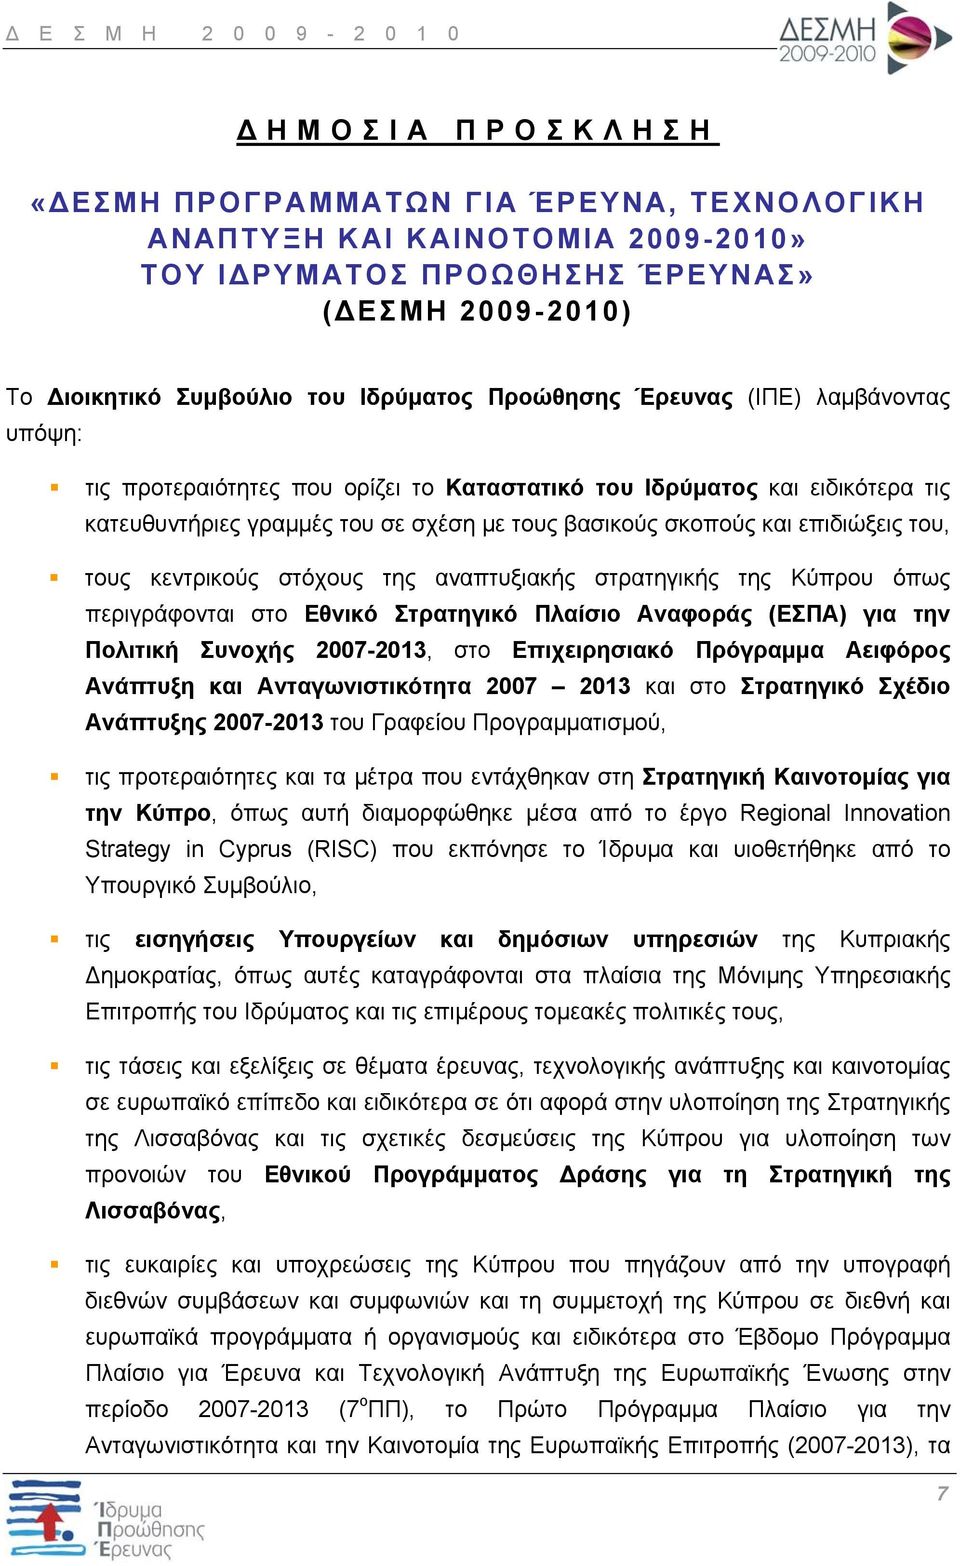 κεντρικούς στόχους της αναπτυξιακής στρατηγικής της Κύπρου όπως περιγράφονται στο Εθνικό Στρατηγικό Πλαίσιο Αναφοράς (ΕΣΠΑ) για την Πολιτική Συνοχής 2007-2013, στο Επιχειρησιακό Πρόγραμμα Αειφόρος